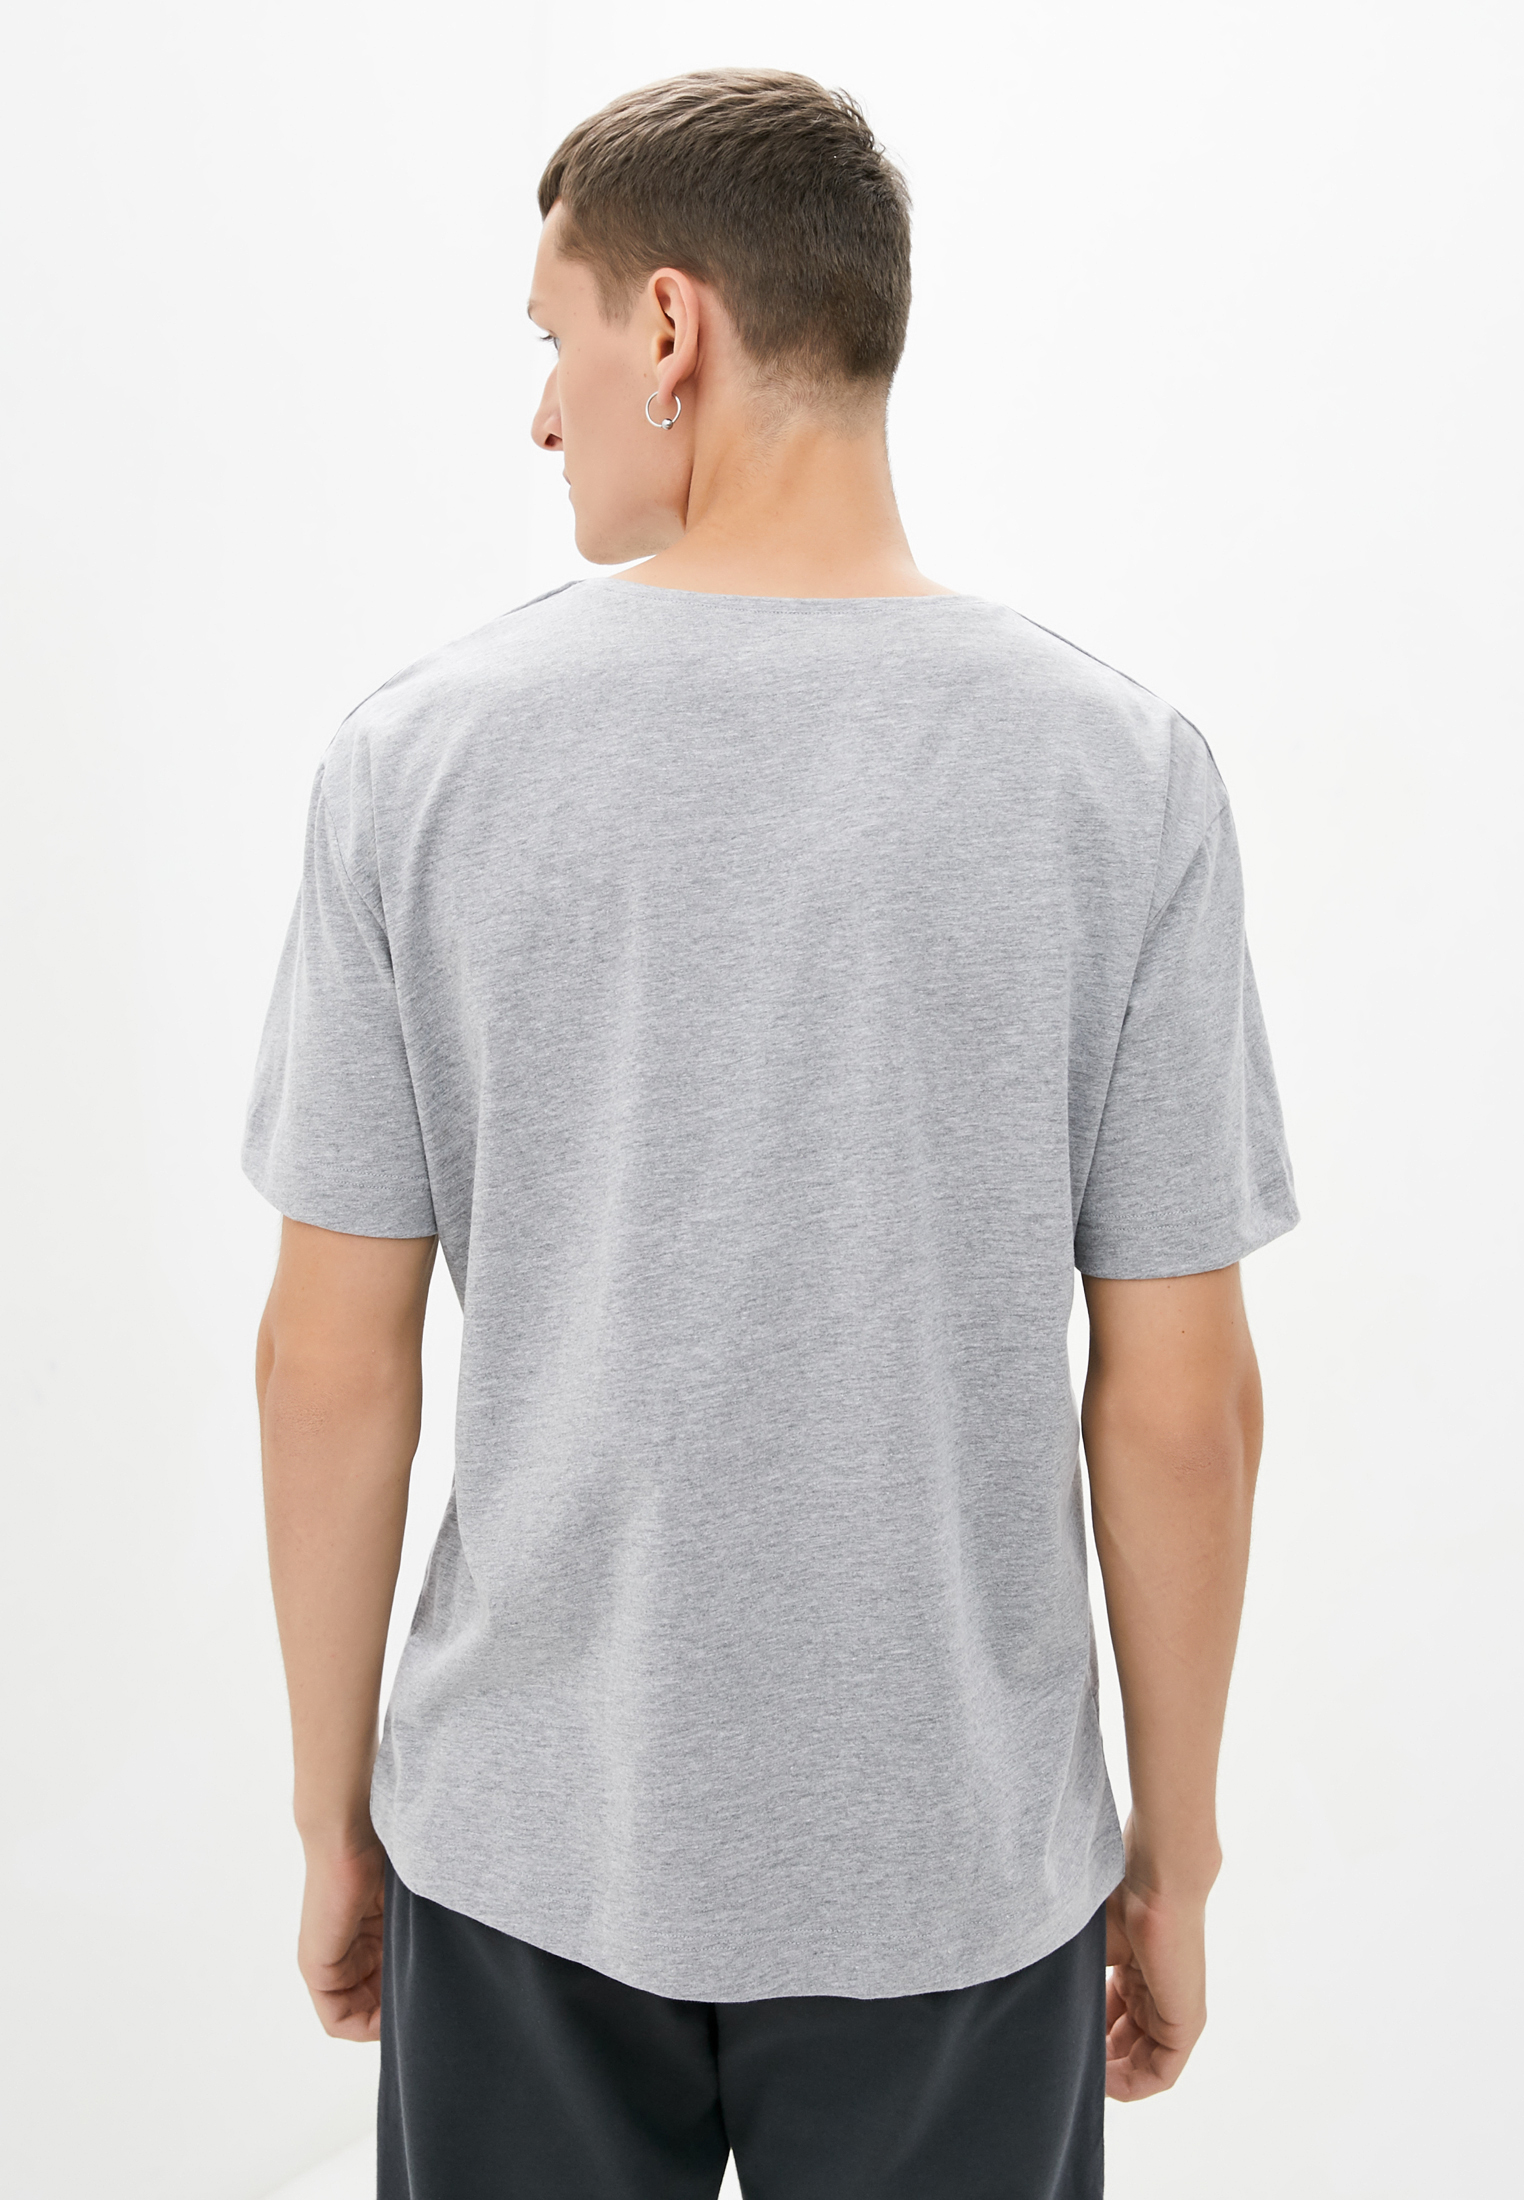 T-shirt, vendor code: 1012-29, color: Light gray